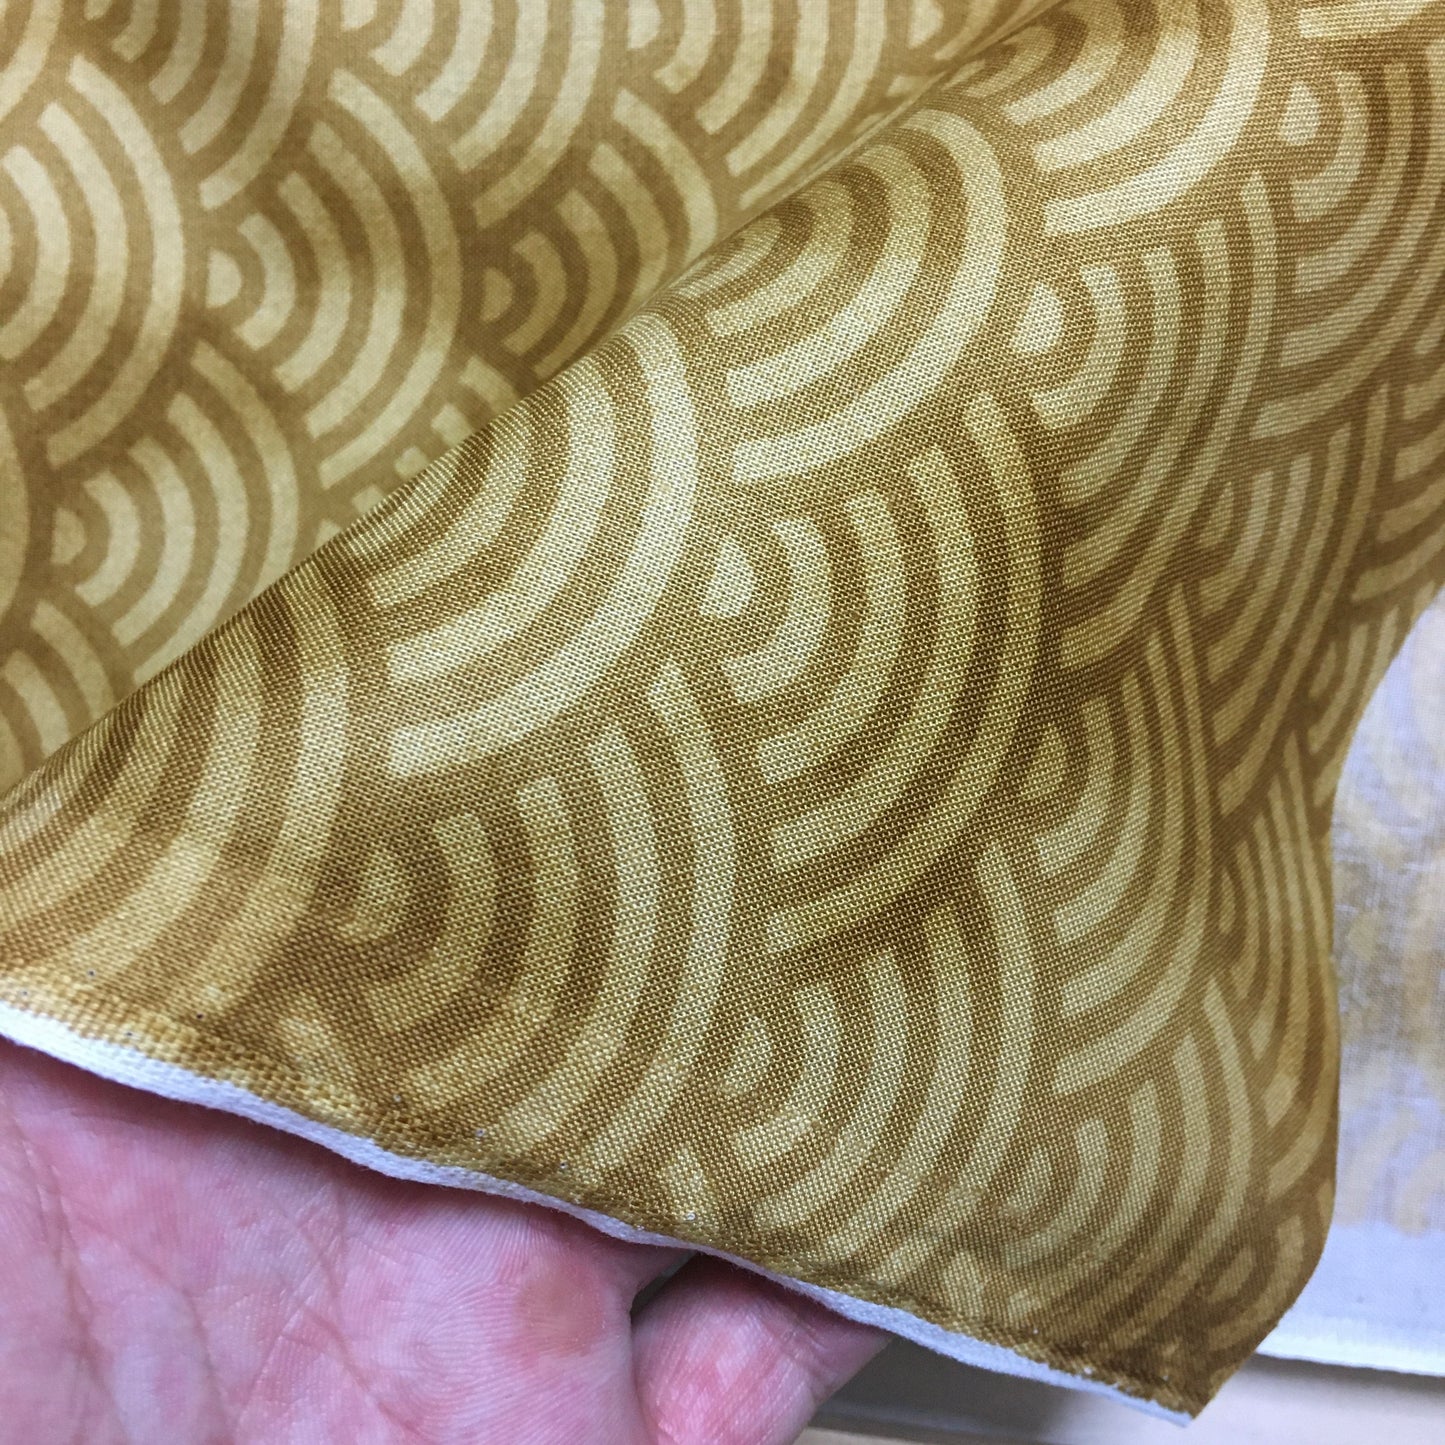 99-200 Qinghai wave pattern, Japanese pattern, 100% Cotton, Sheeting, Brown, 2m